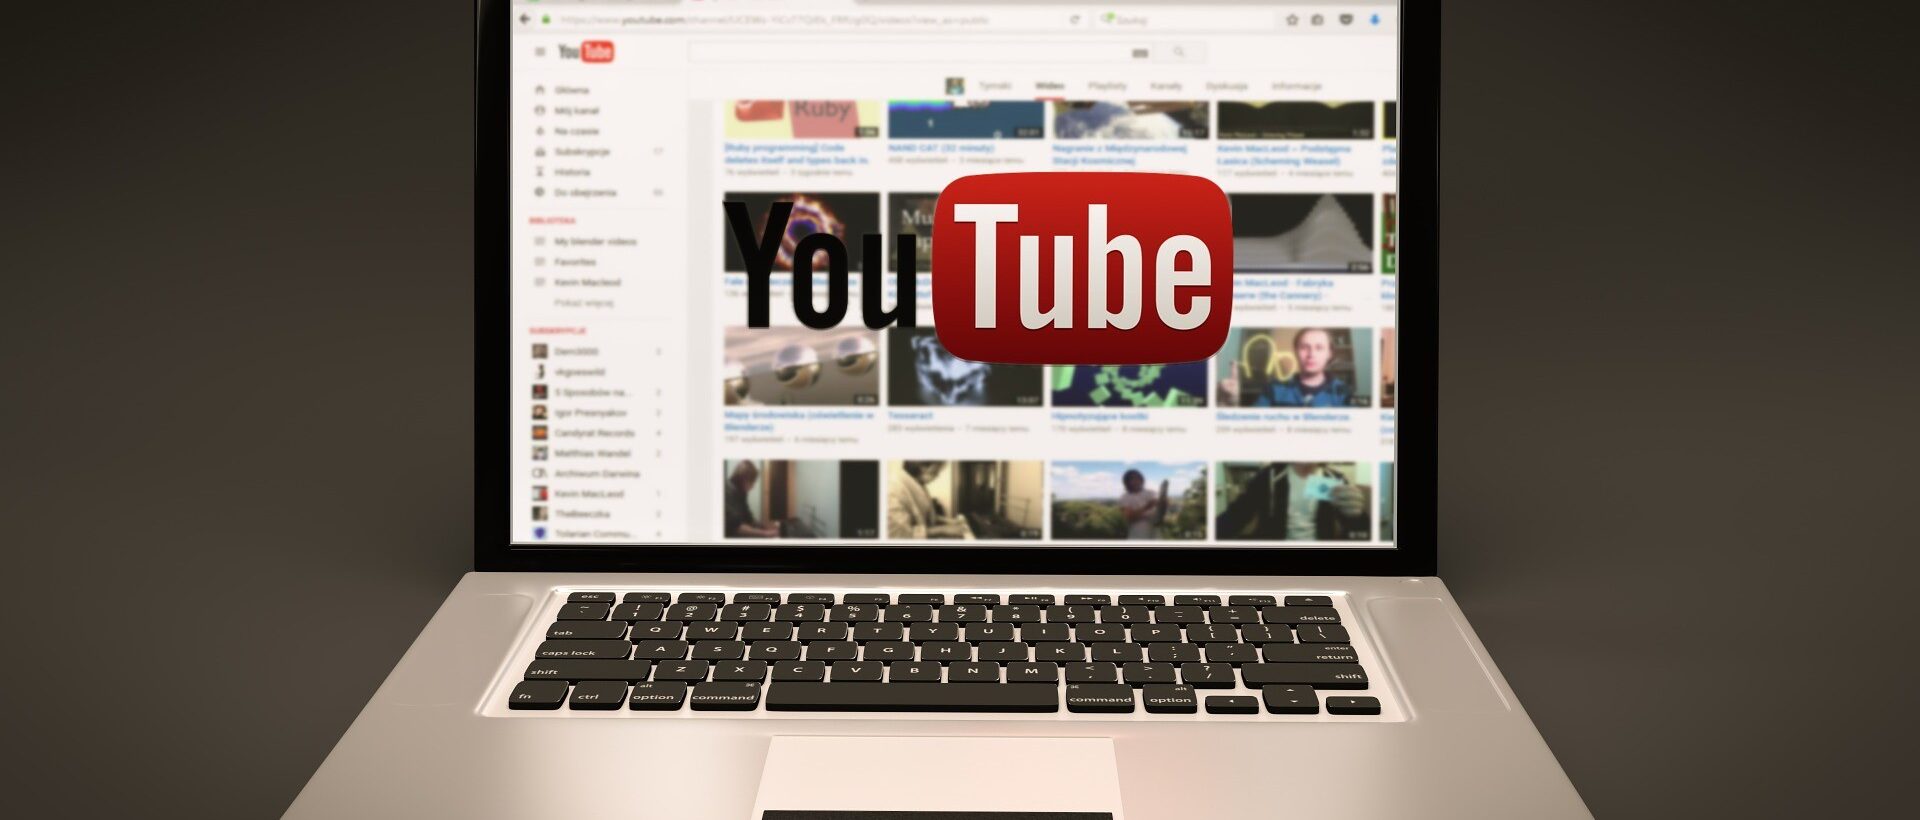 Tippss zum Youtube Optimising